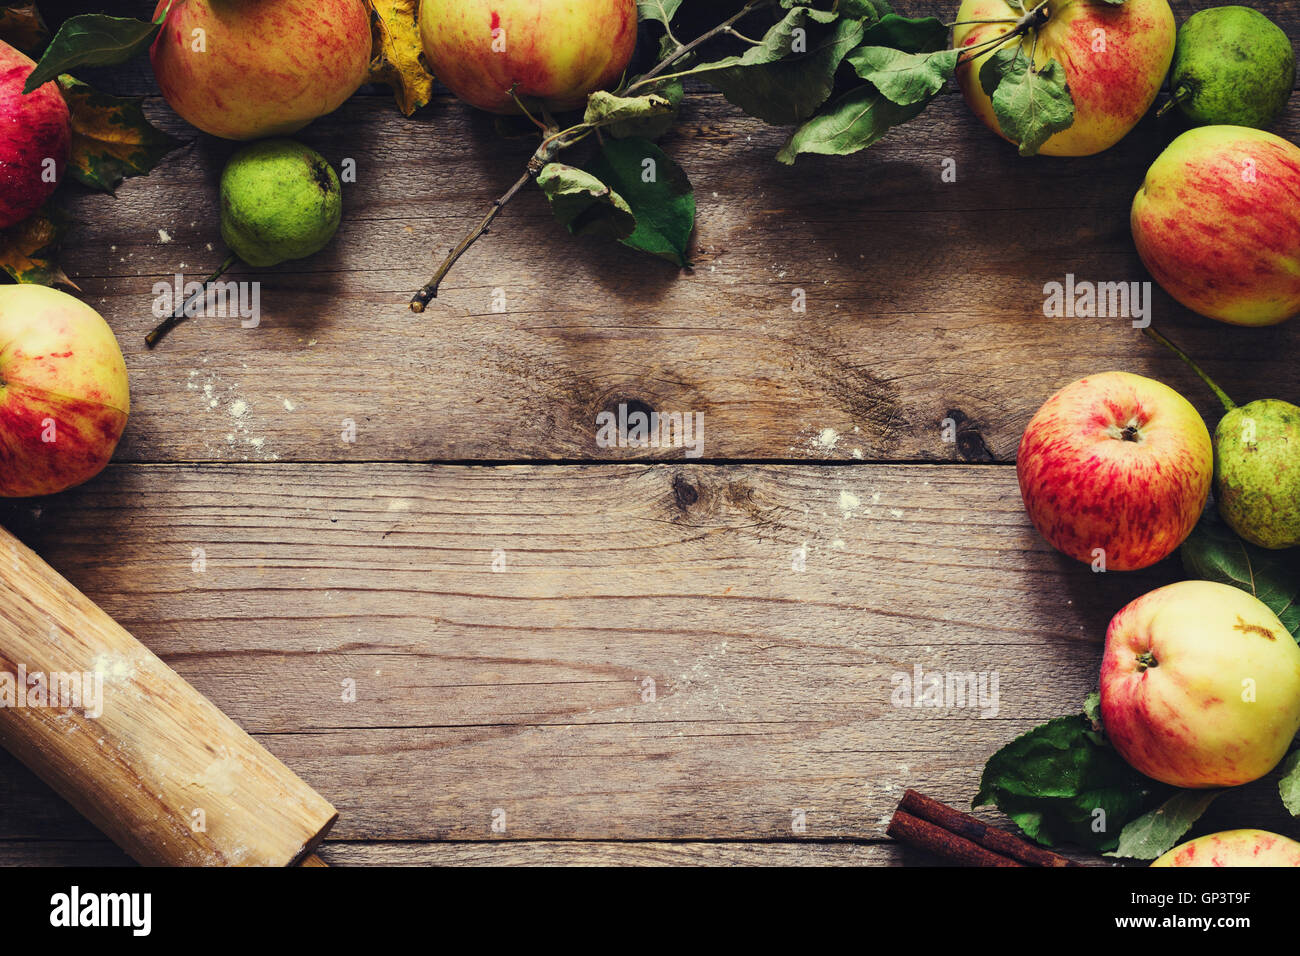 Herbst Hintergrund: Grenze von Äpfeln, Birnen und Walnüsse auf alten Holztisch. Herbst, Erntedankfest und Backen Konzept. Stockfoto